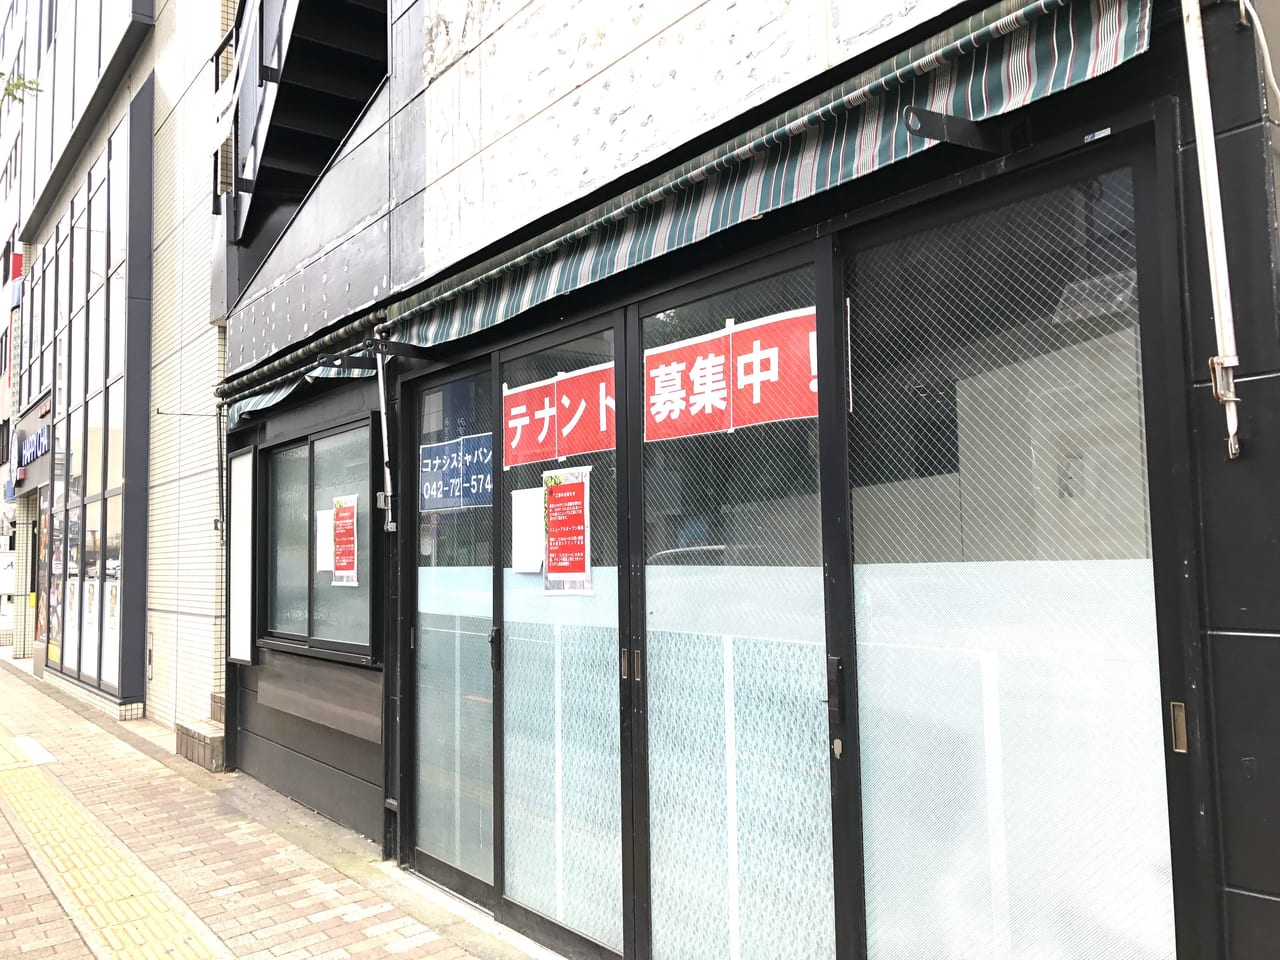 町田市 昨年12月に閉店した小籠包のお店跡に新しいお店がオープン 台湾グルメのあとは トルコのソウルフードです 号外net 町田市